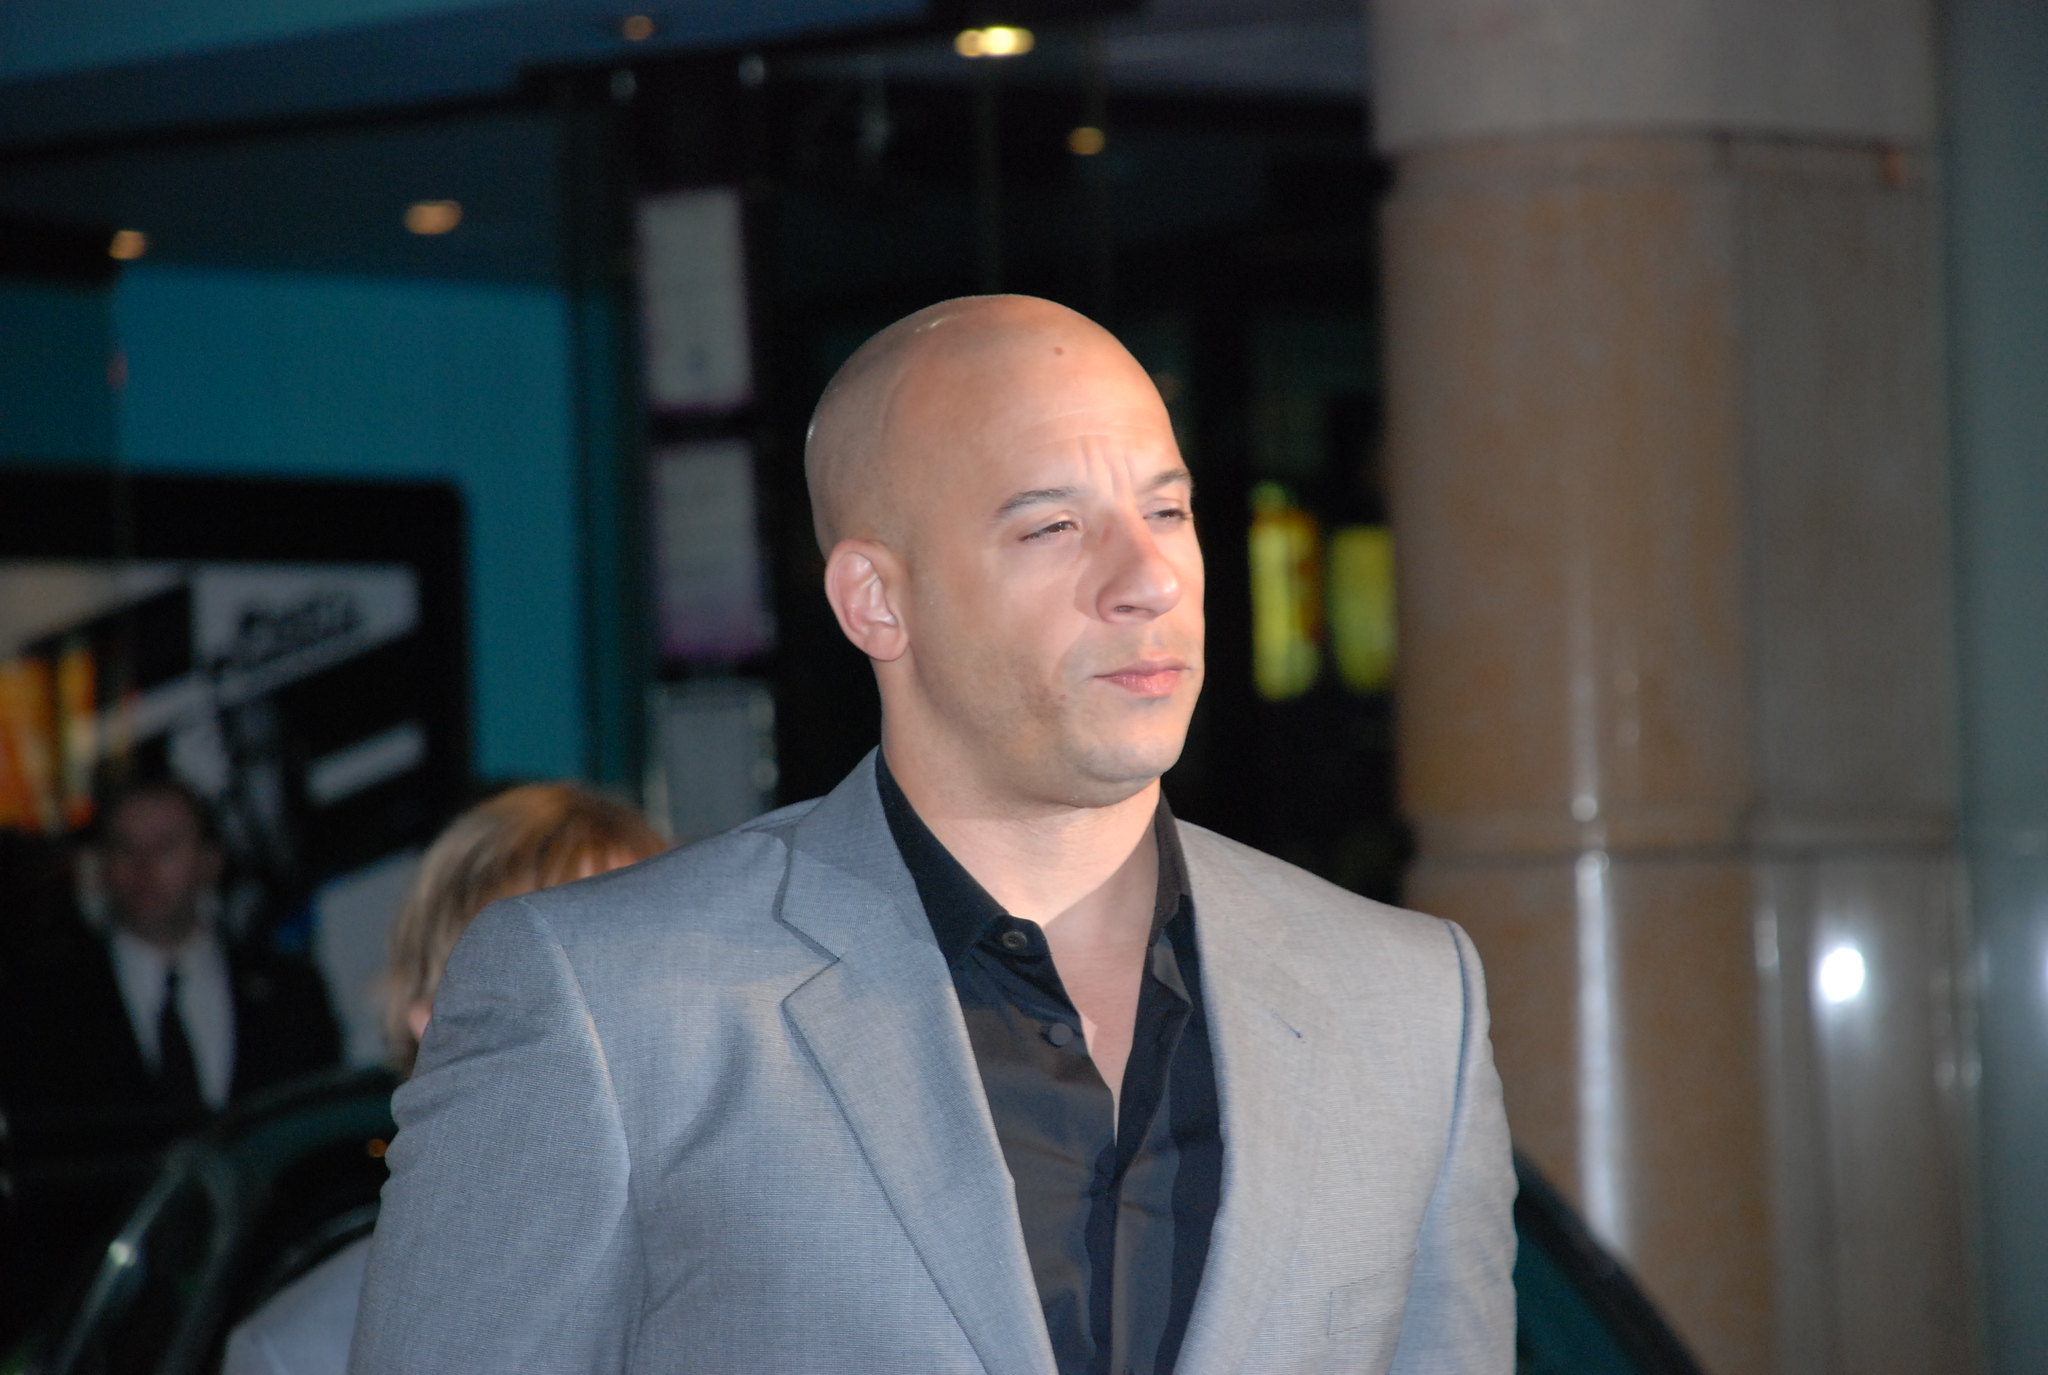 Vin Diesel / Dominic Toretto